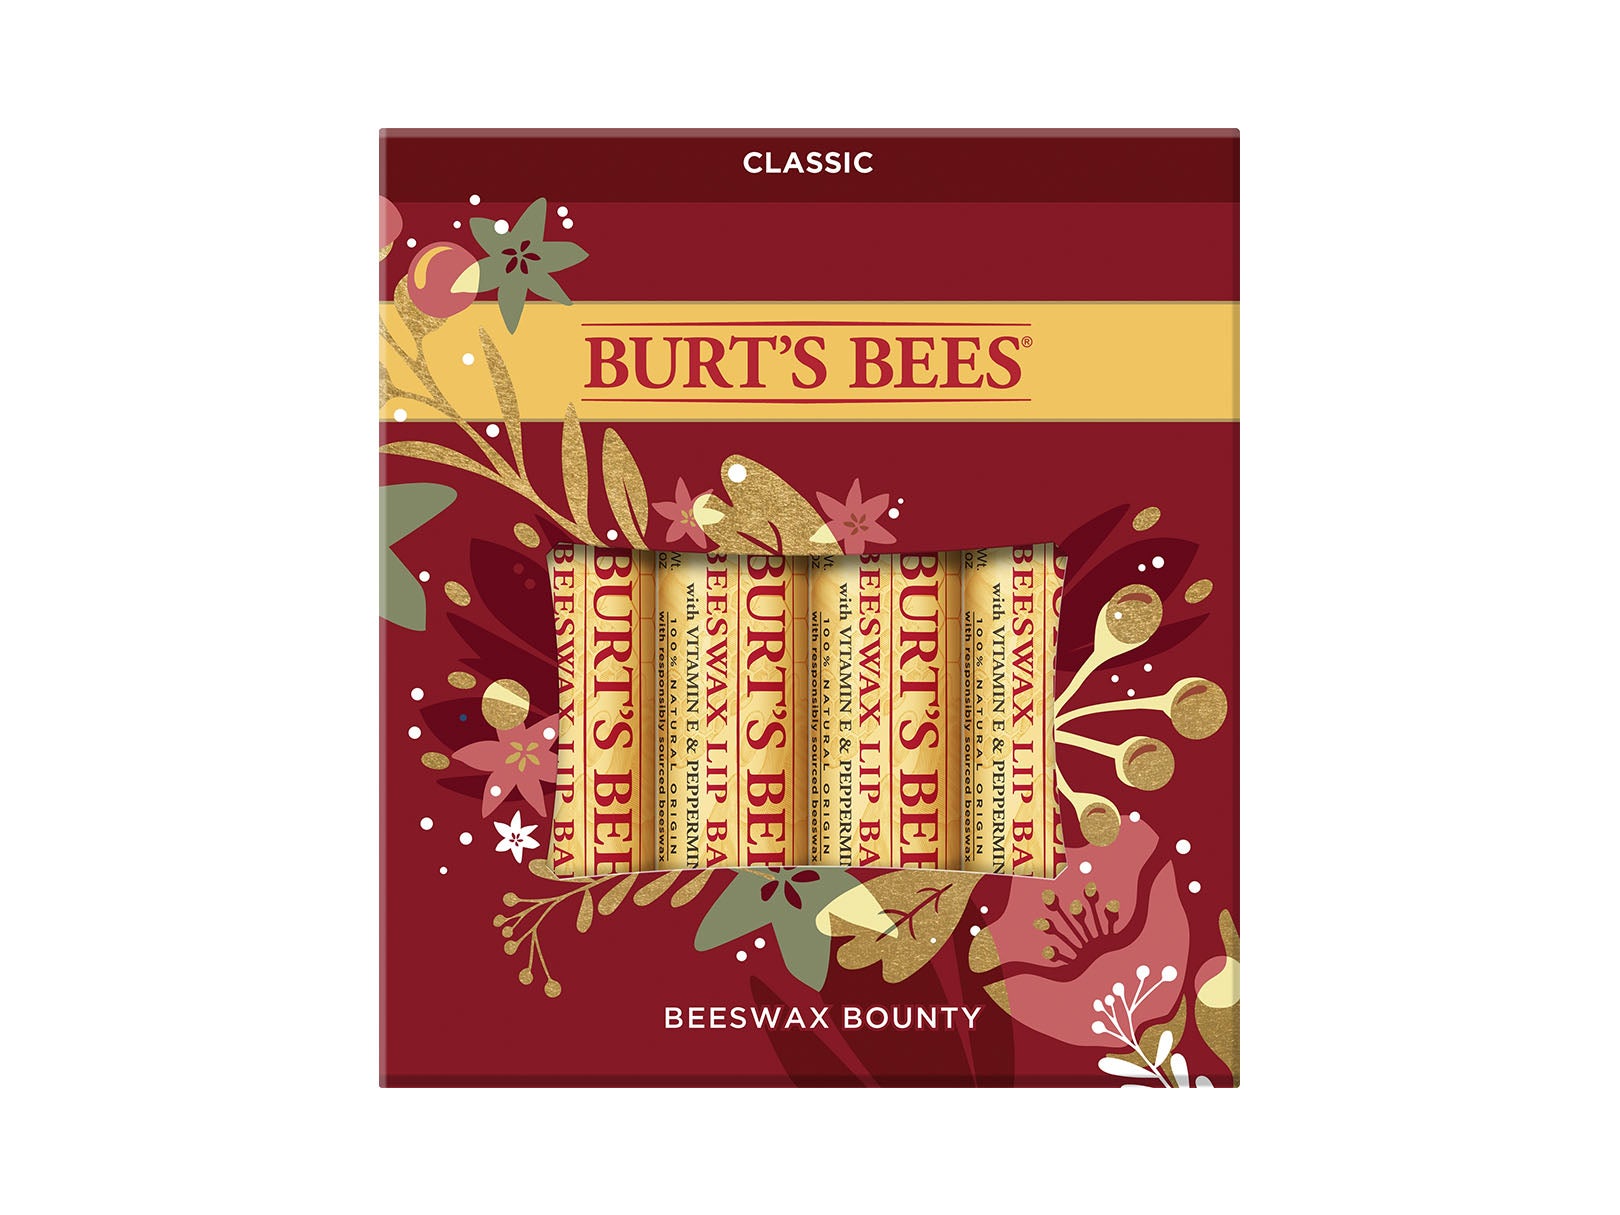 Burt’s Bees Beeswax Bounty Classic Gift